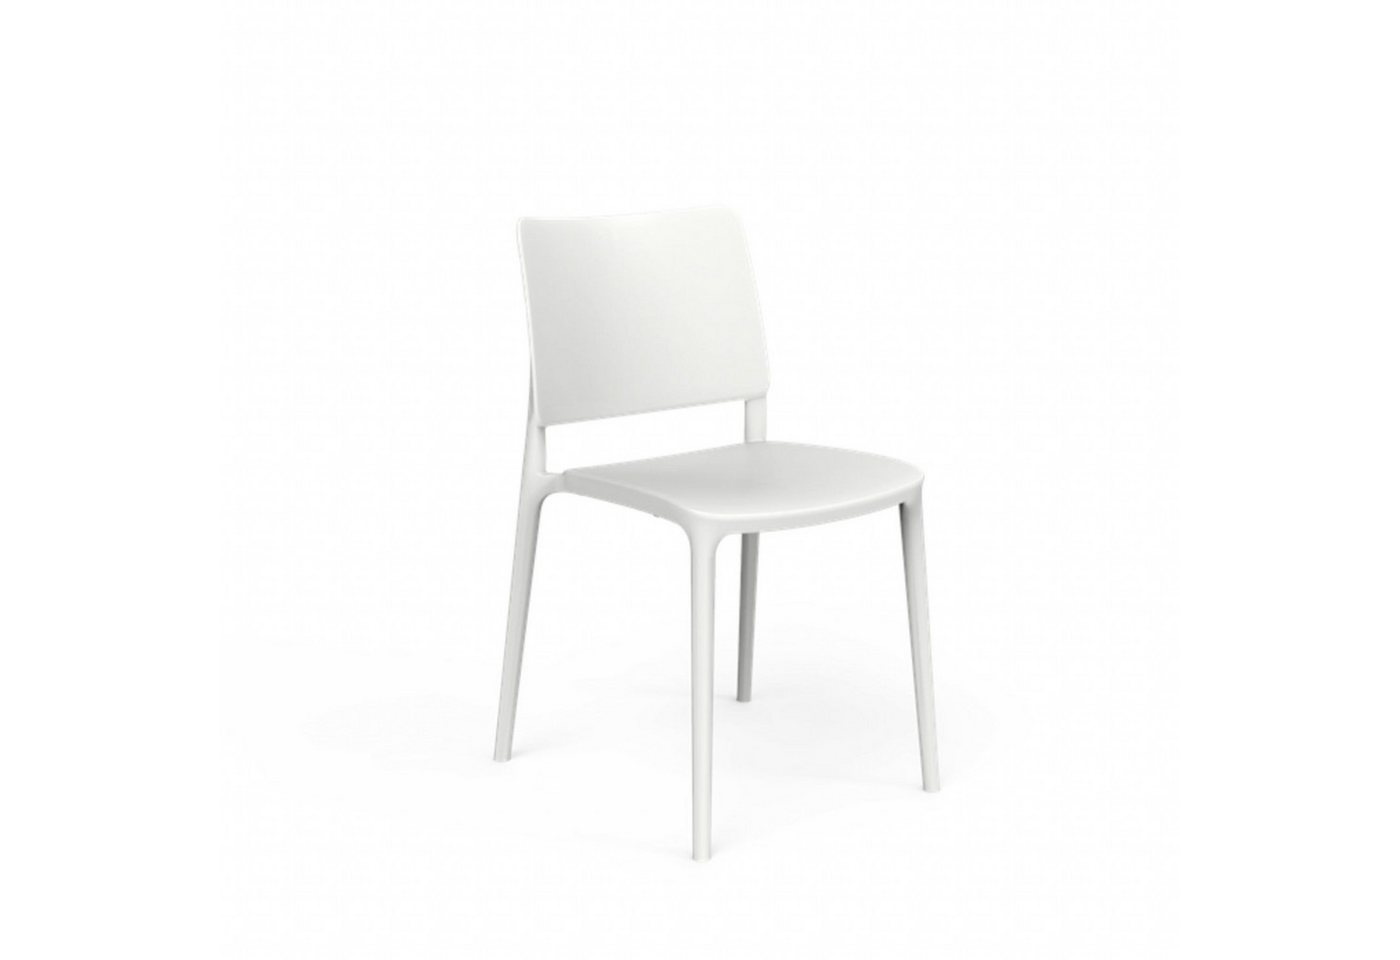 Adezz Gartenstuhl One To Sit Stapelstuhl Sera weiß/schwarz/grau/taupe Stuhl stapelbar von Adezz